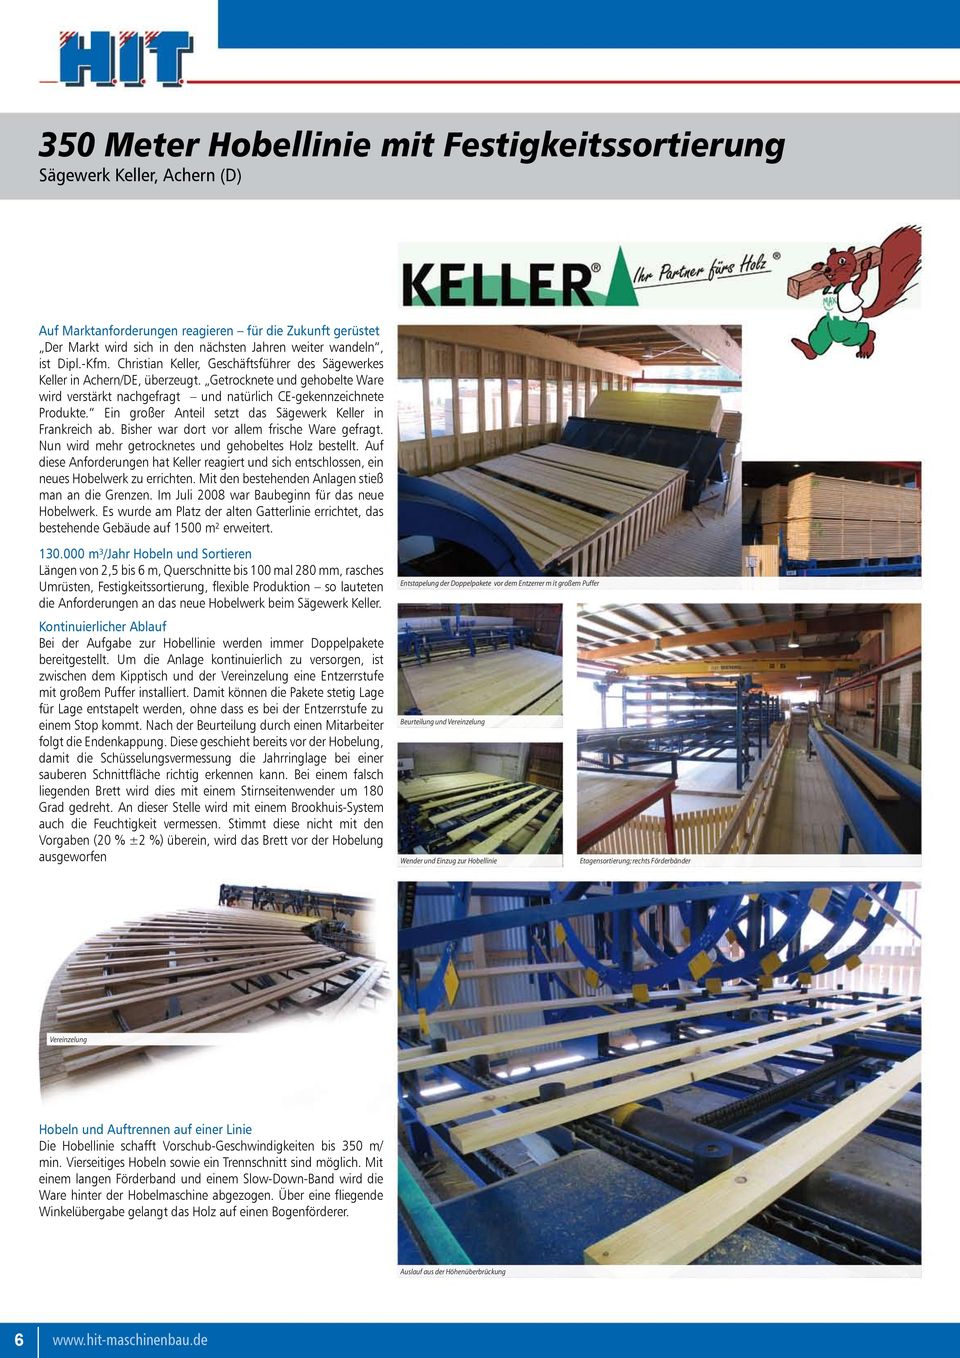 Ein großer Anteil setzt das Sägewerk Keller in Frankreich ab. Bisher war dort vor allem frische Ware gefragt. Nun wird mehr getrocknetes und gehobeltes Holz bestellt.